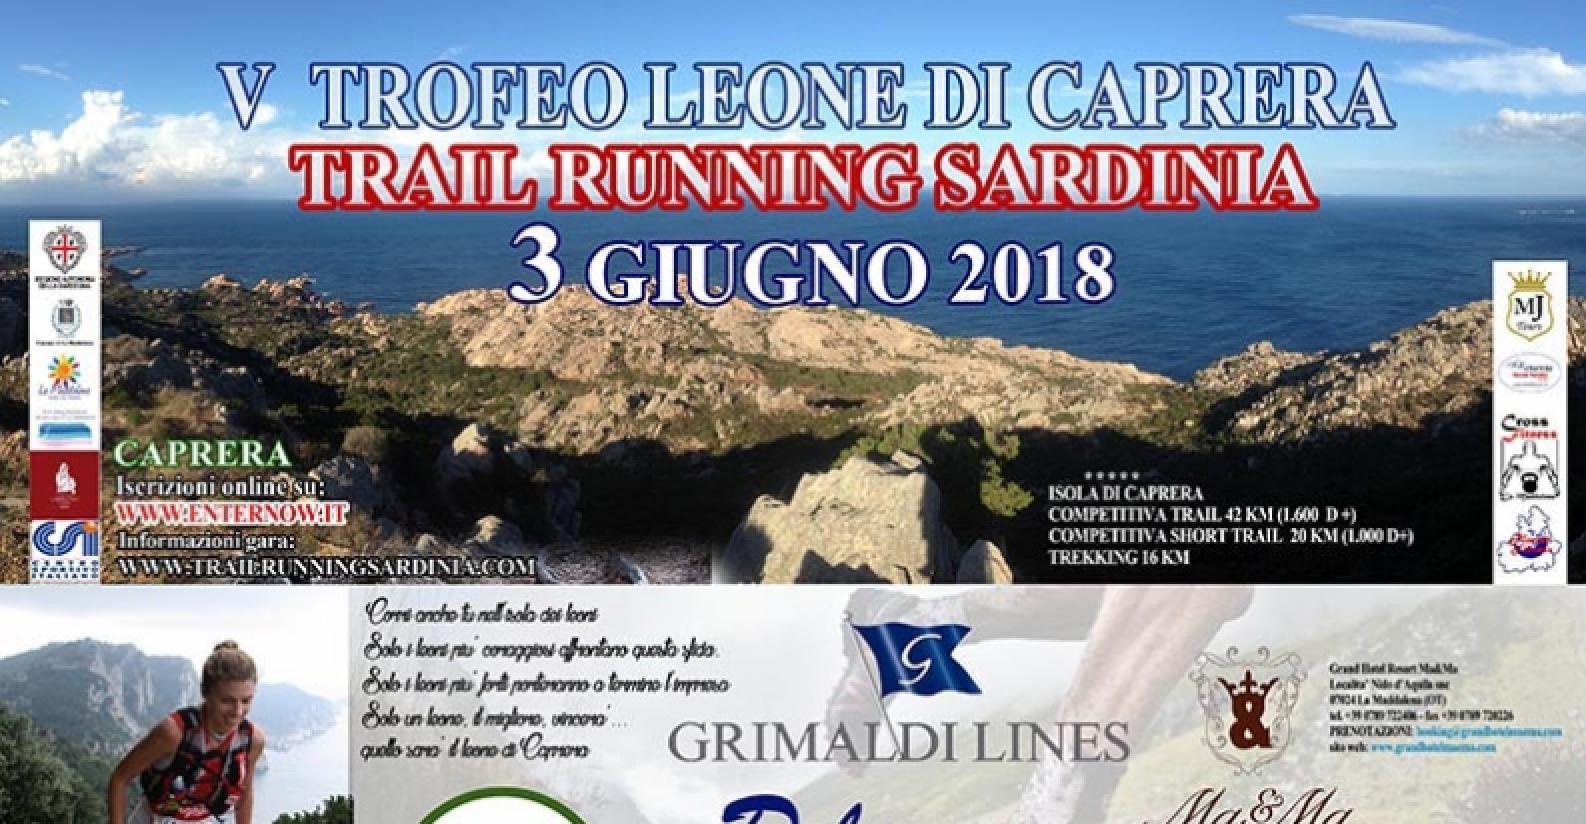 V Trofeo Leone di Caprera Trail Running Sardinia (locand